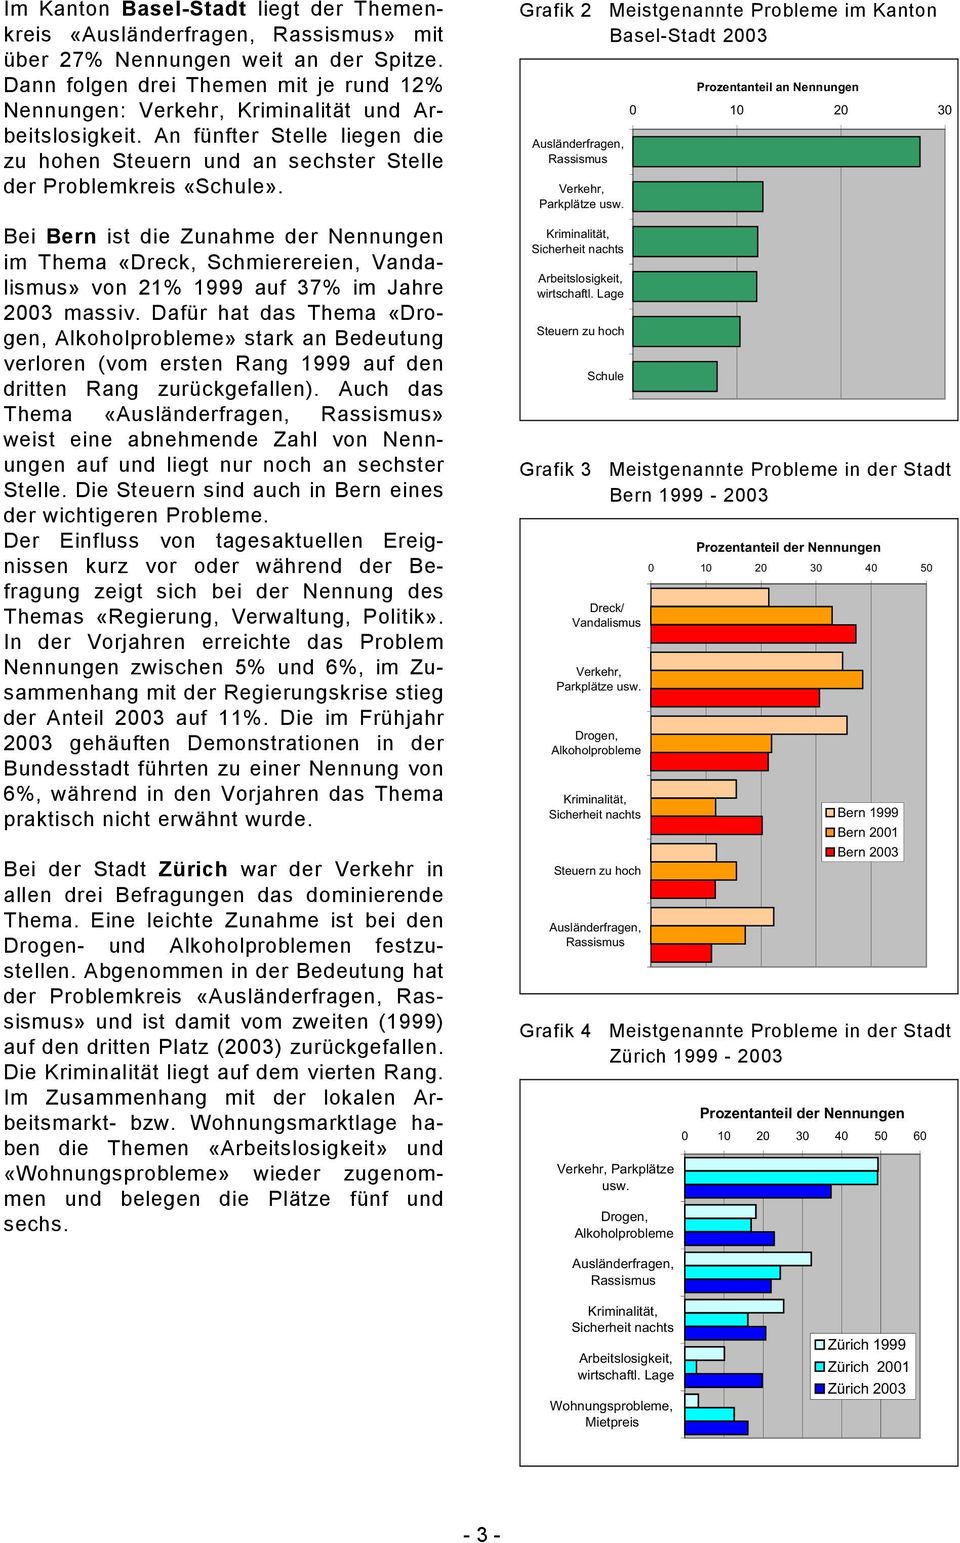 Bei Bern ist die Zunahme der Nennungen im Thema «Dreck, Schmierereien, Vandalismus» von 21% 1999 auf 37% im Jahre massiv.